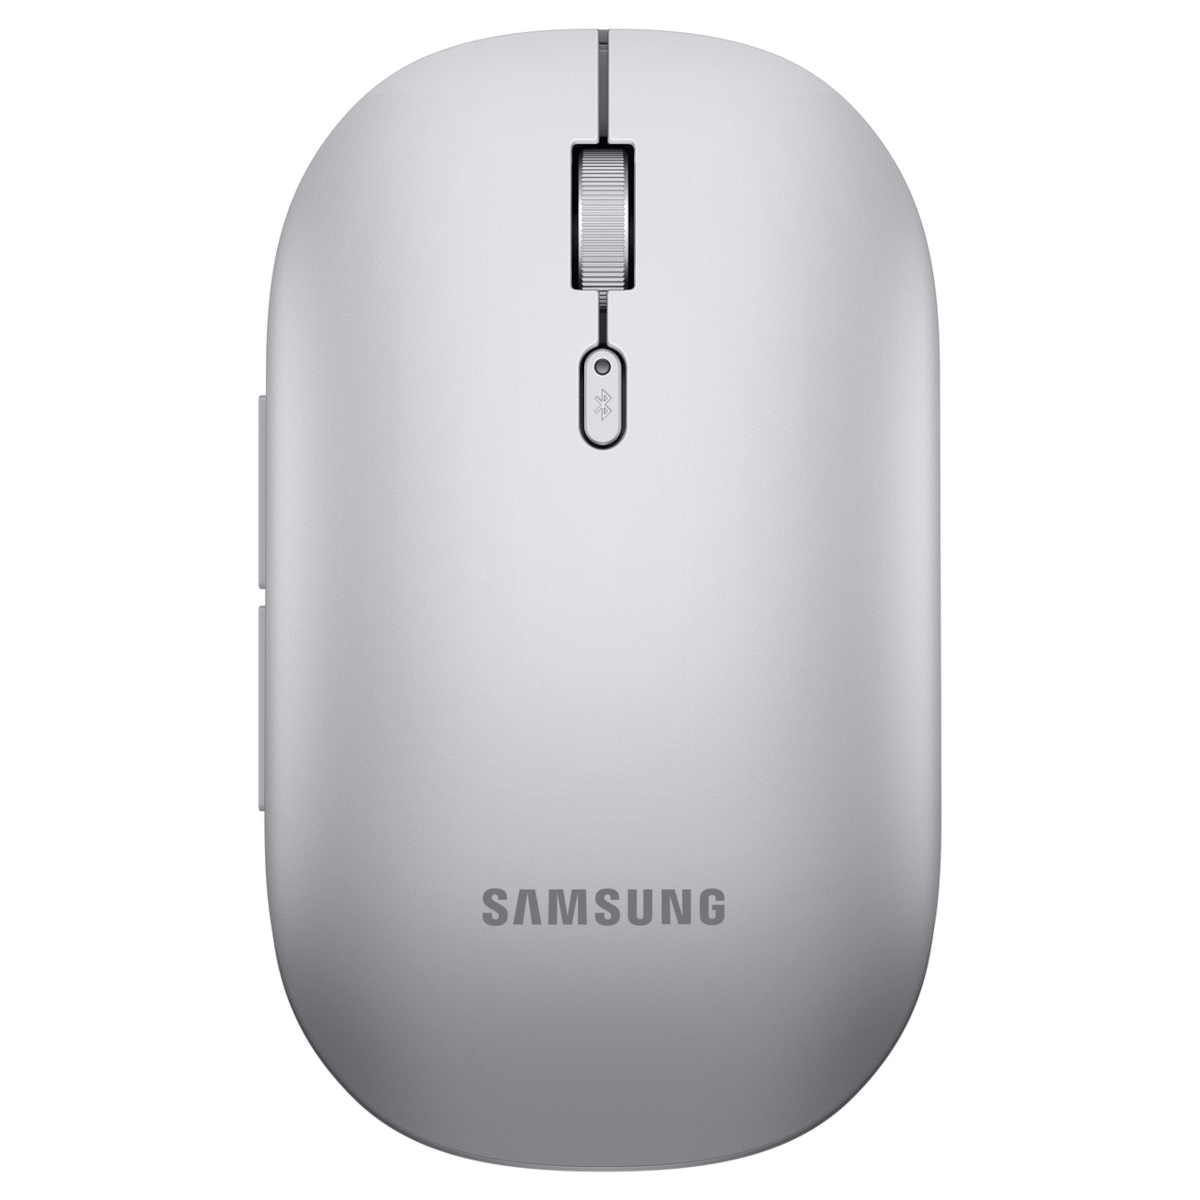 Samsung Bluetooth Mouse Slim EJ-M3400, Silver von Samsung